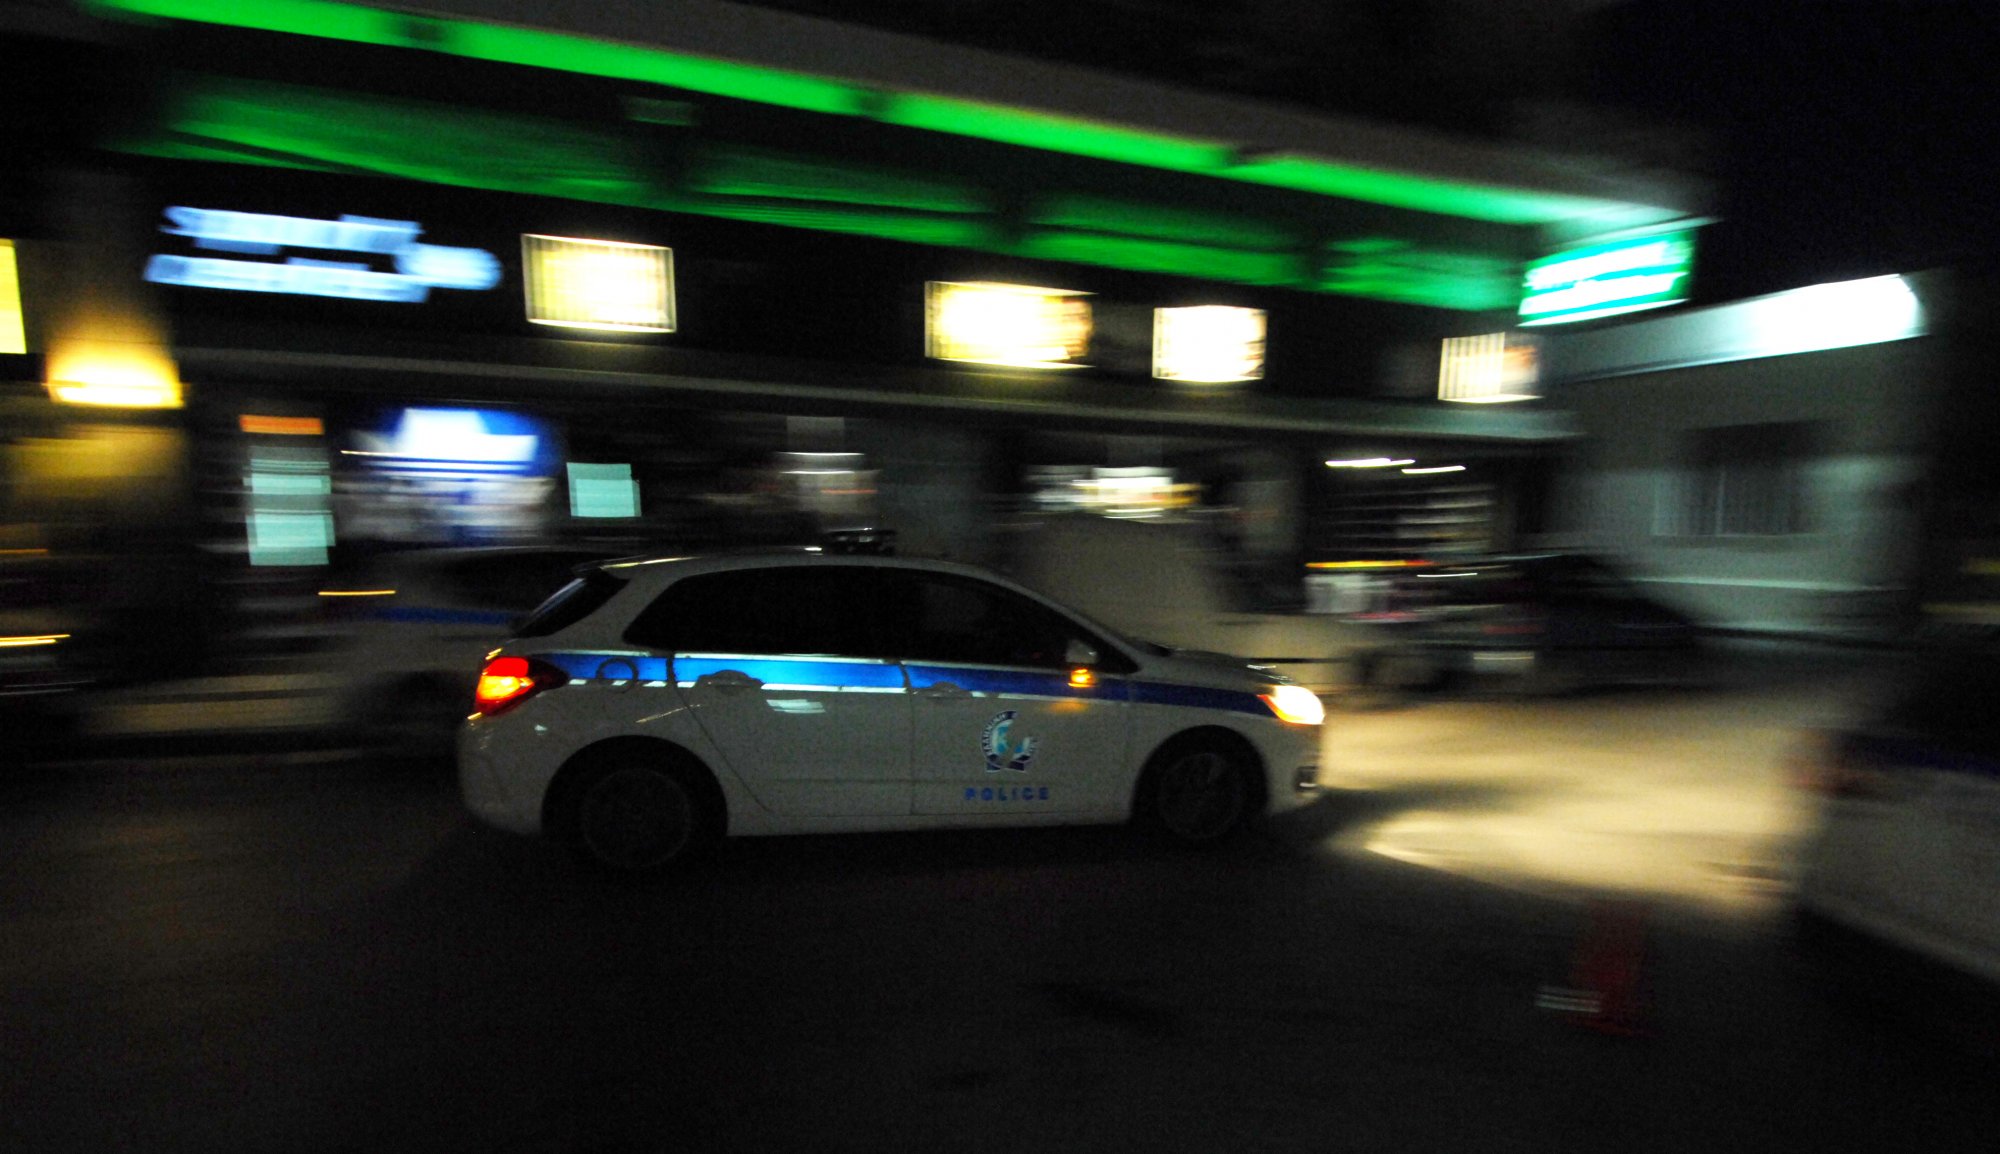 Θεσσαλονίκη: Επίθεση σε πέντε άτομα στη Λητή - Κατέβηκαν από τα αυτοκίνητα, τους έδειραν και έφυγαν